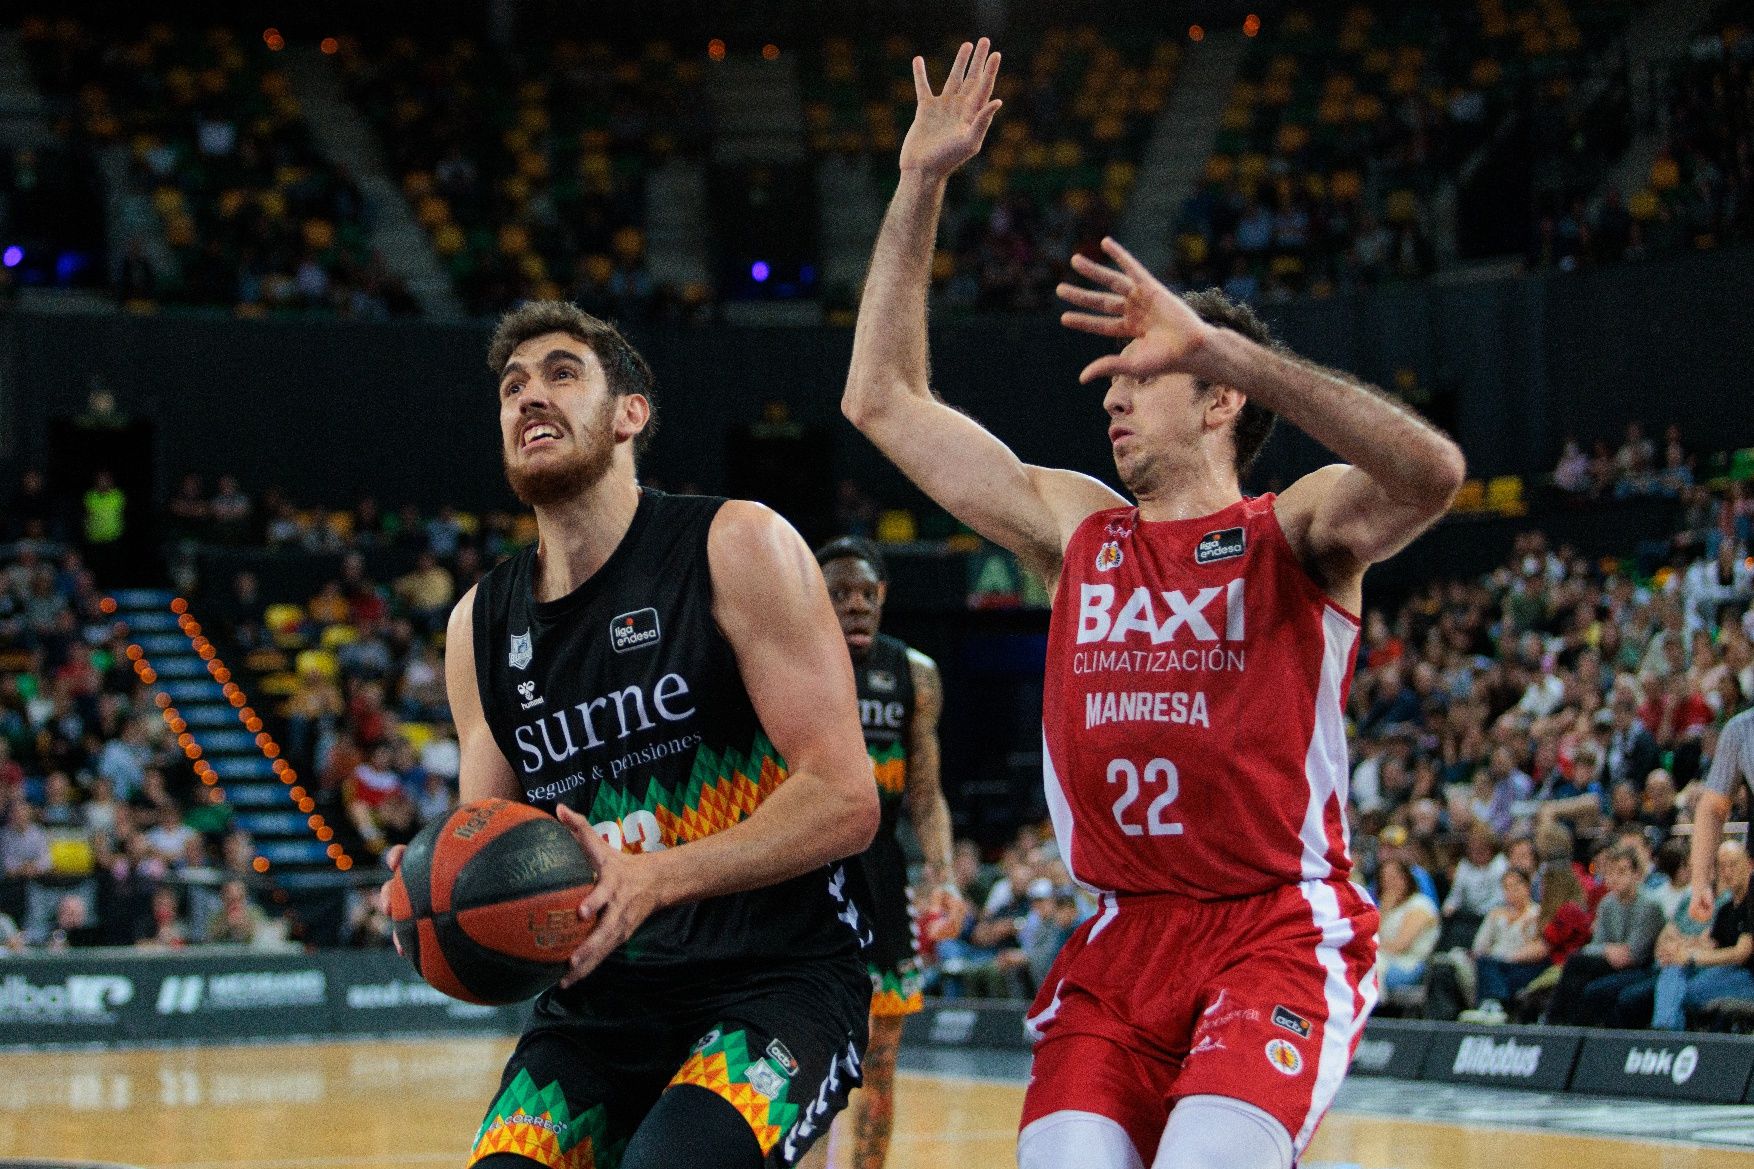 Les imatges del Bilbao Basket - Baxi Manresa